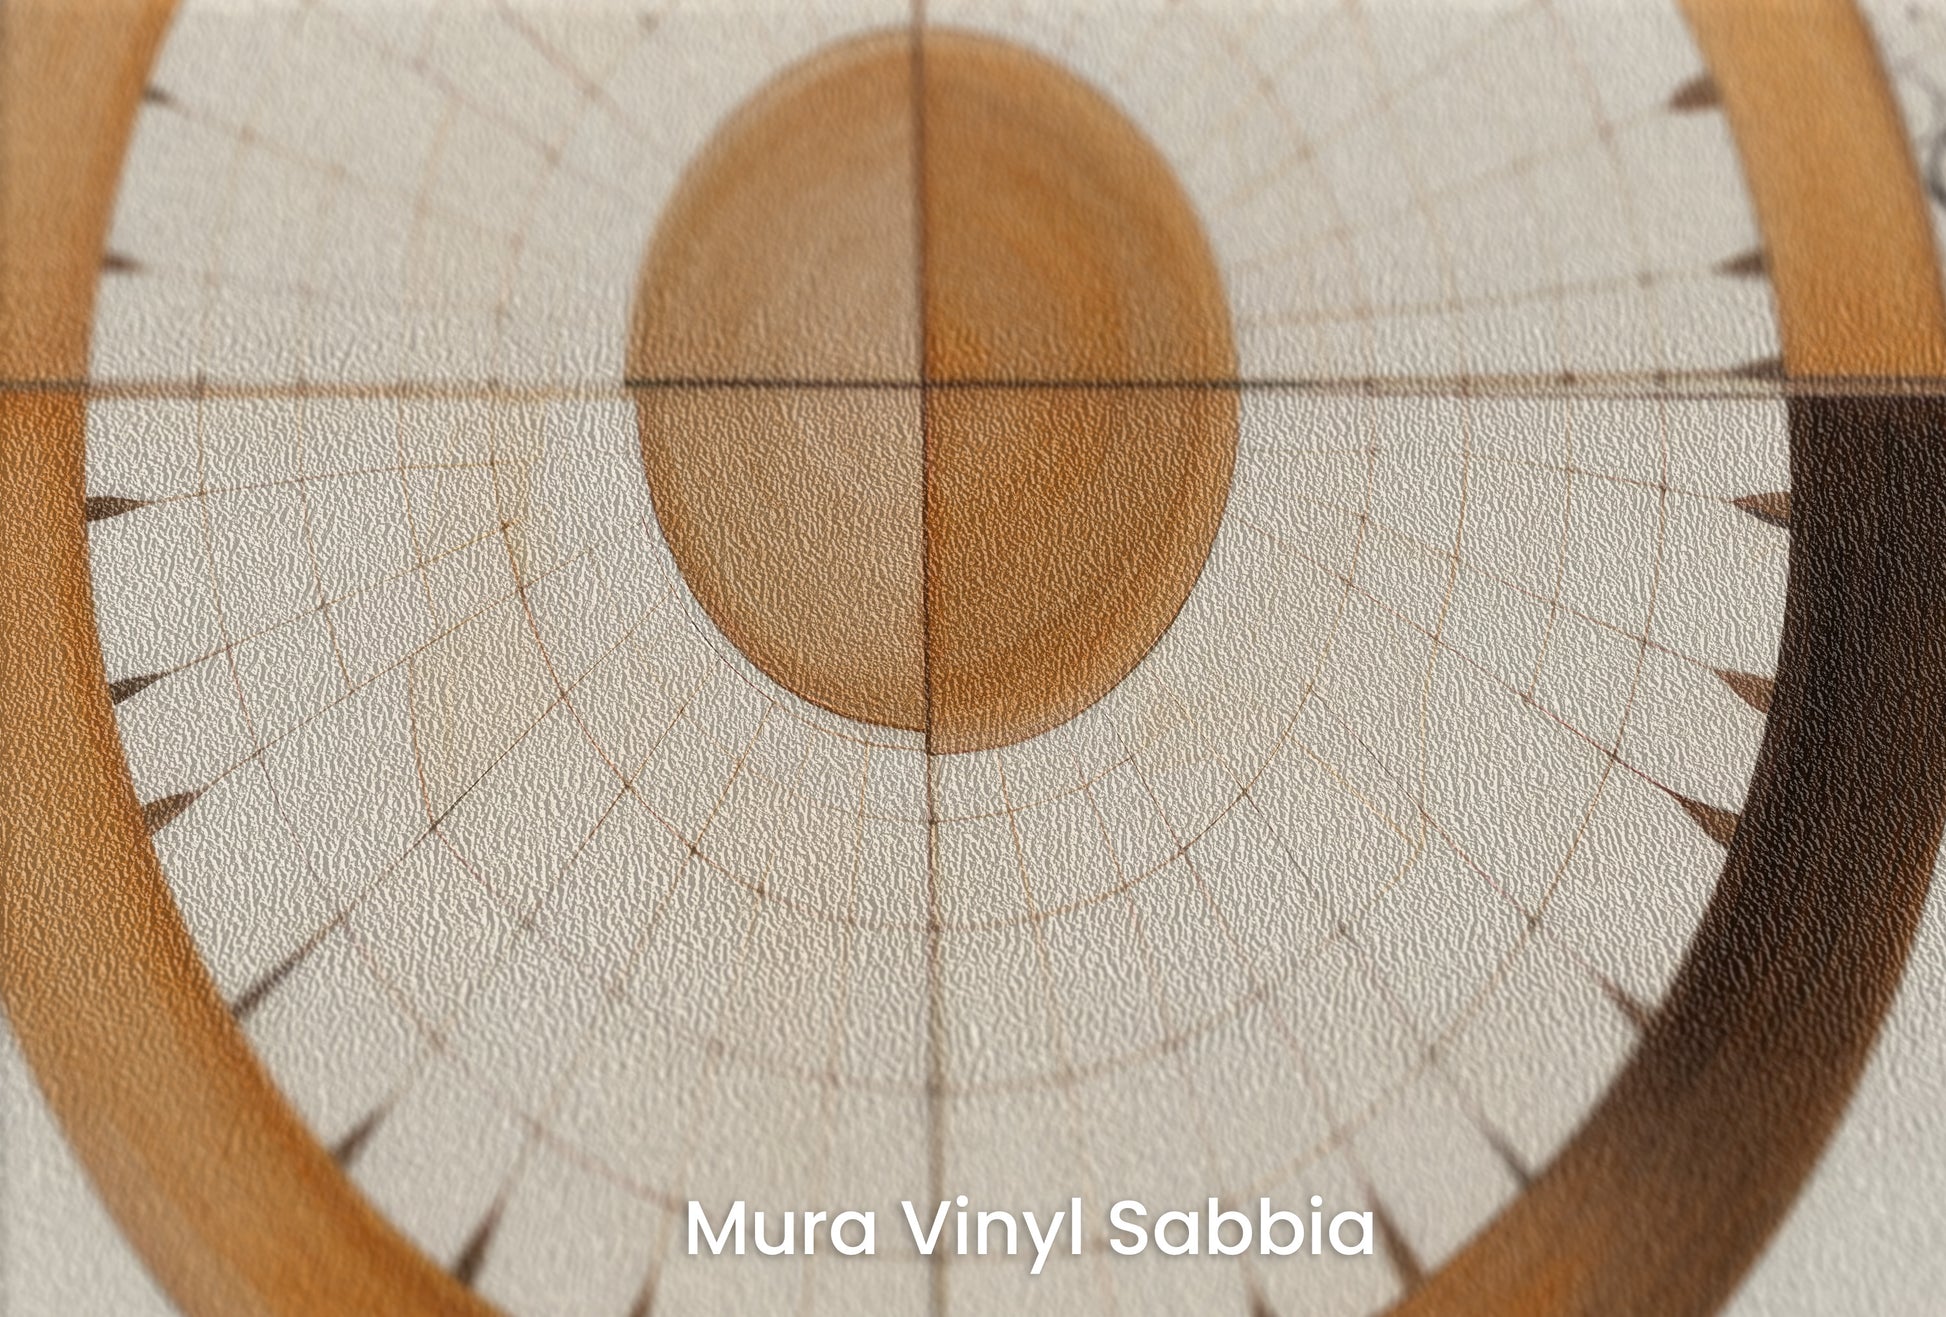 Zbliżenie na artystyczną fototapetę o nazwie ORBITAL HARMONY IN WOODEN HUES na podłożu Mura Vinyl Sabbia struktura grubego ziarna piasku.